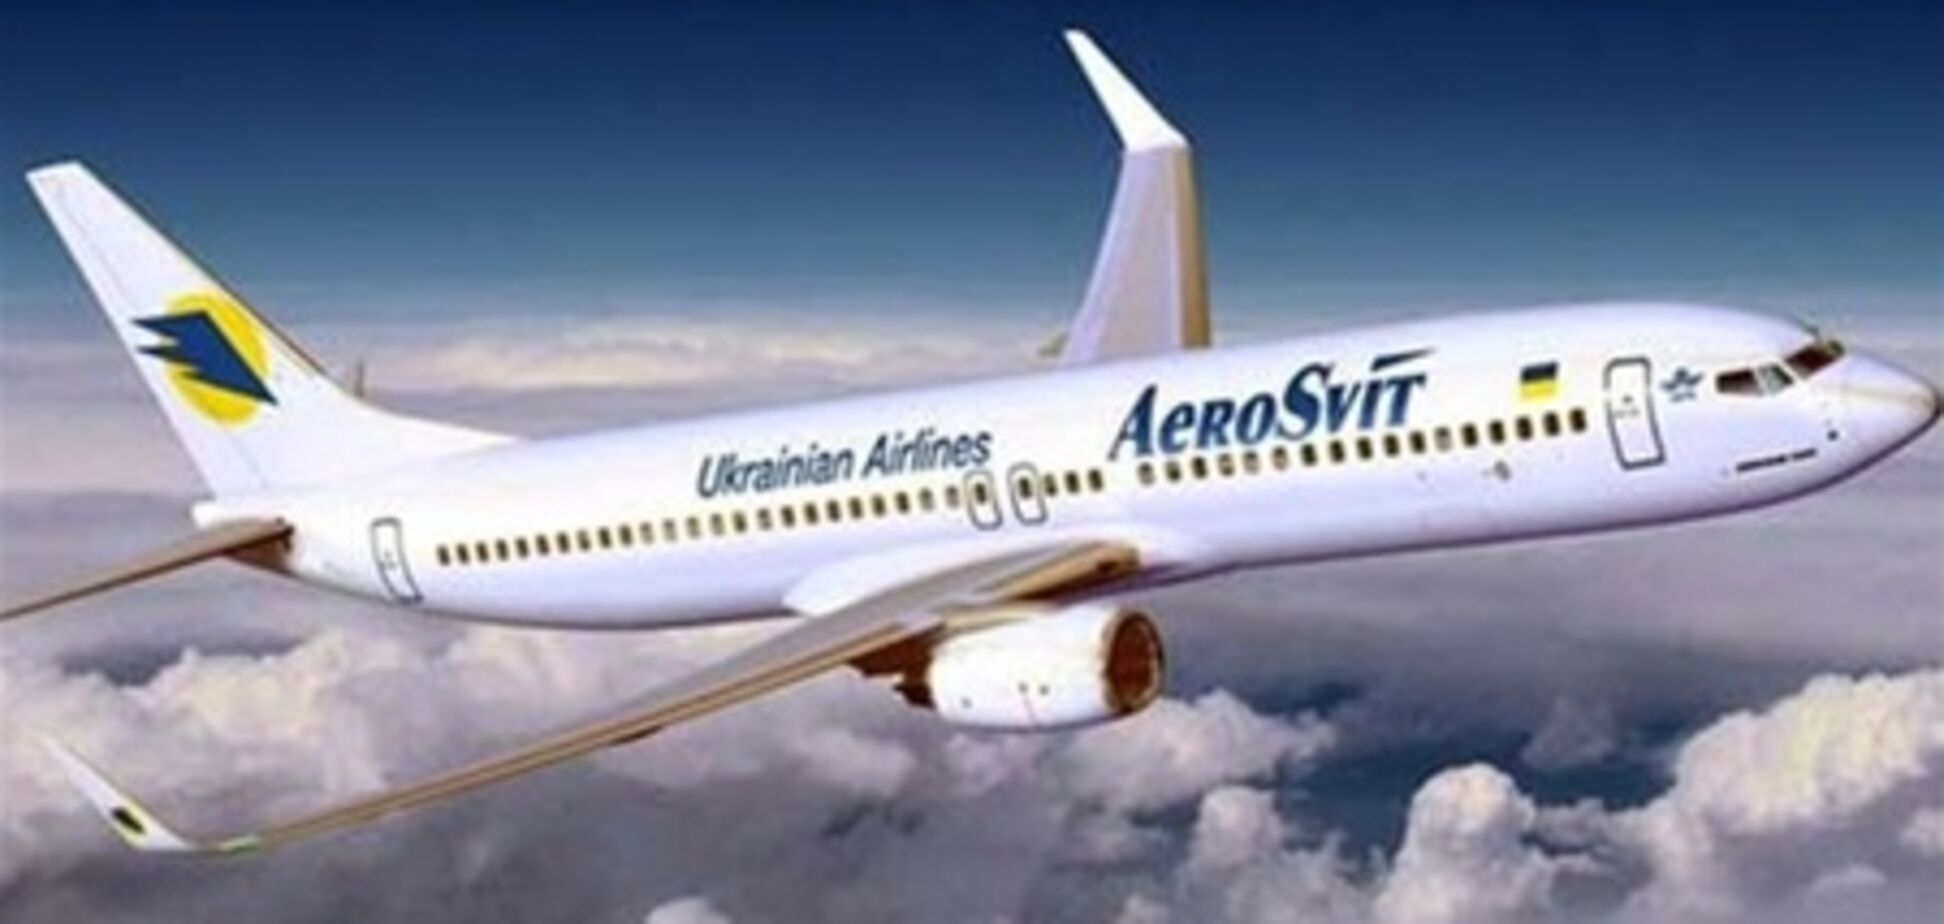 'АэроСвит' могут лишить лицензии на международные авиаперевозки - СМИ